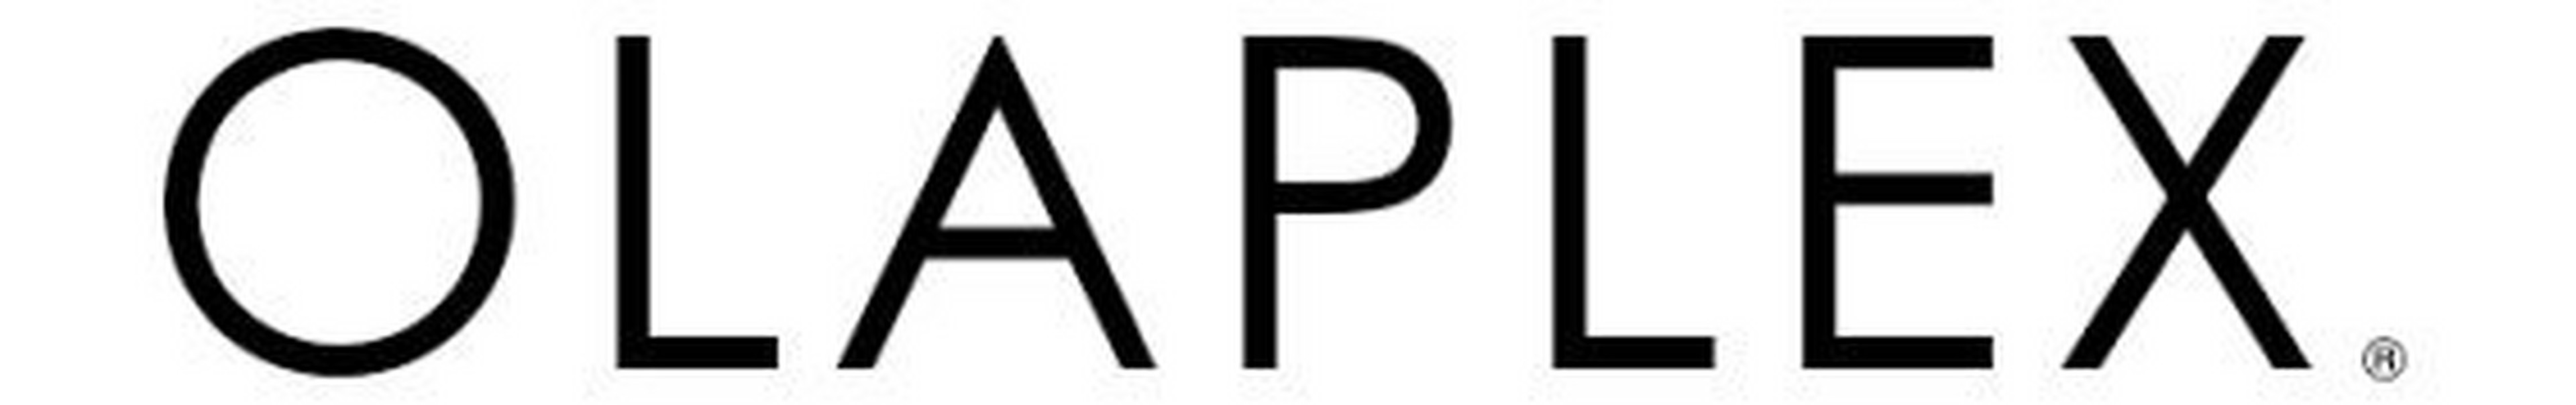 Olaplex logotype